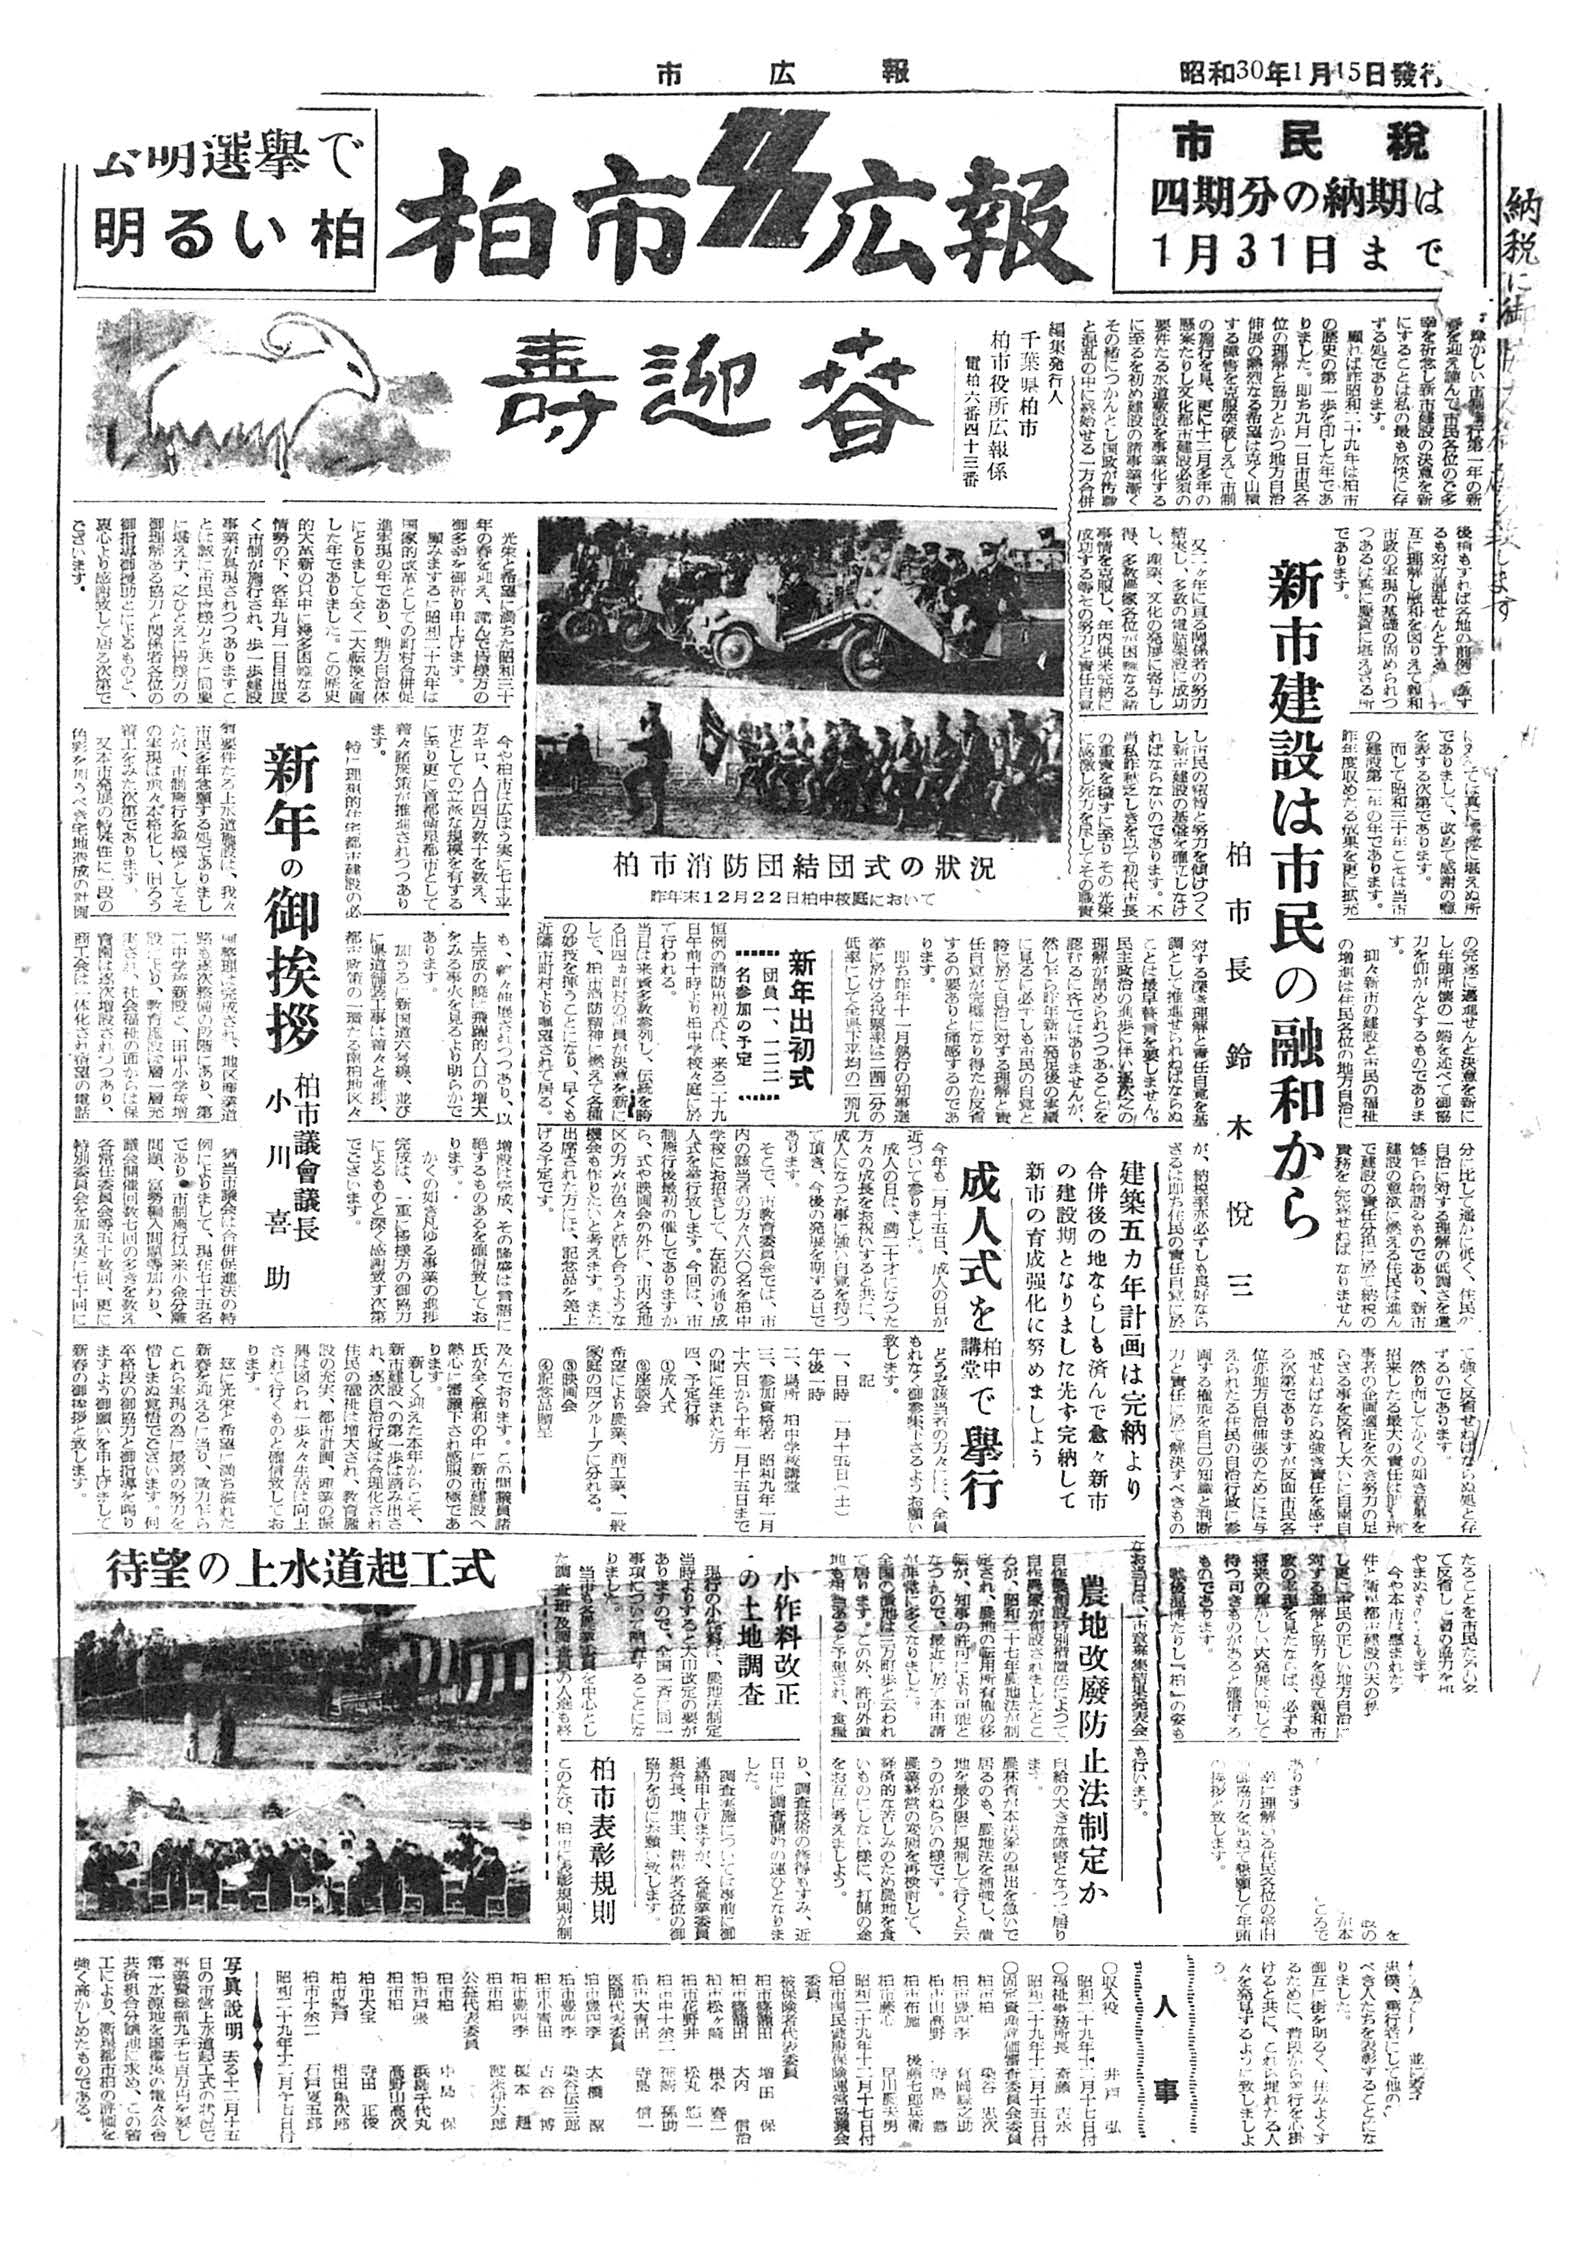 広報かしわ　昭和30年1月15日発行　3号